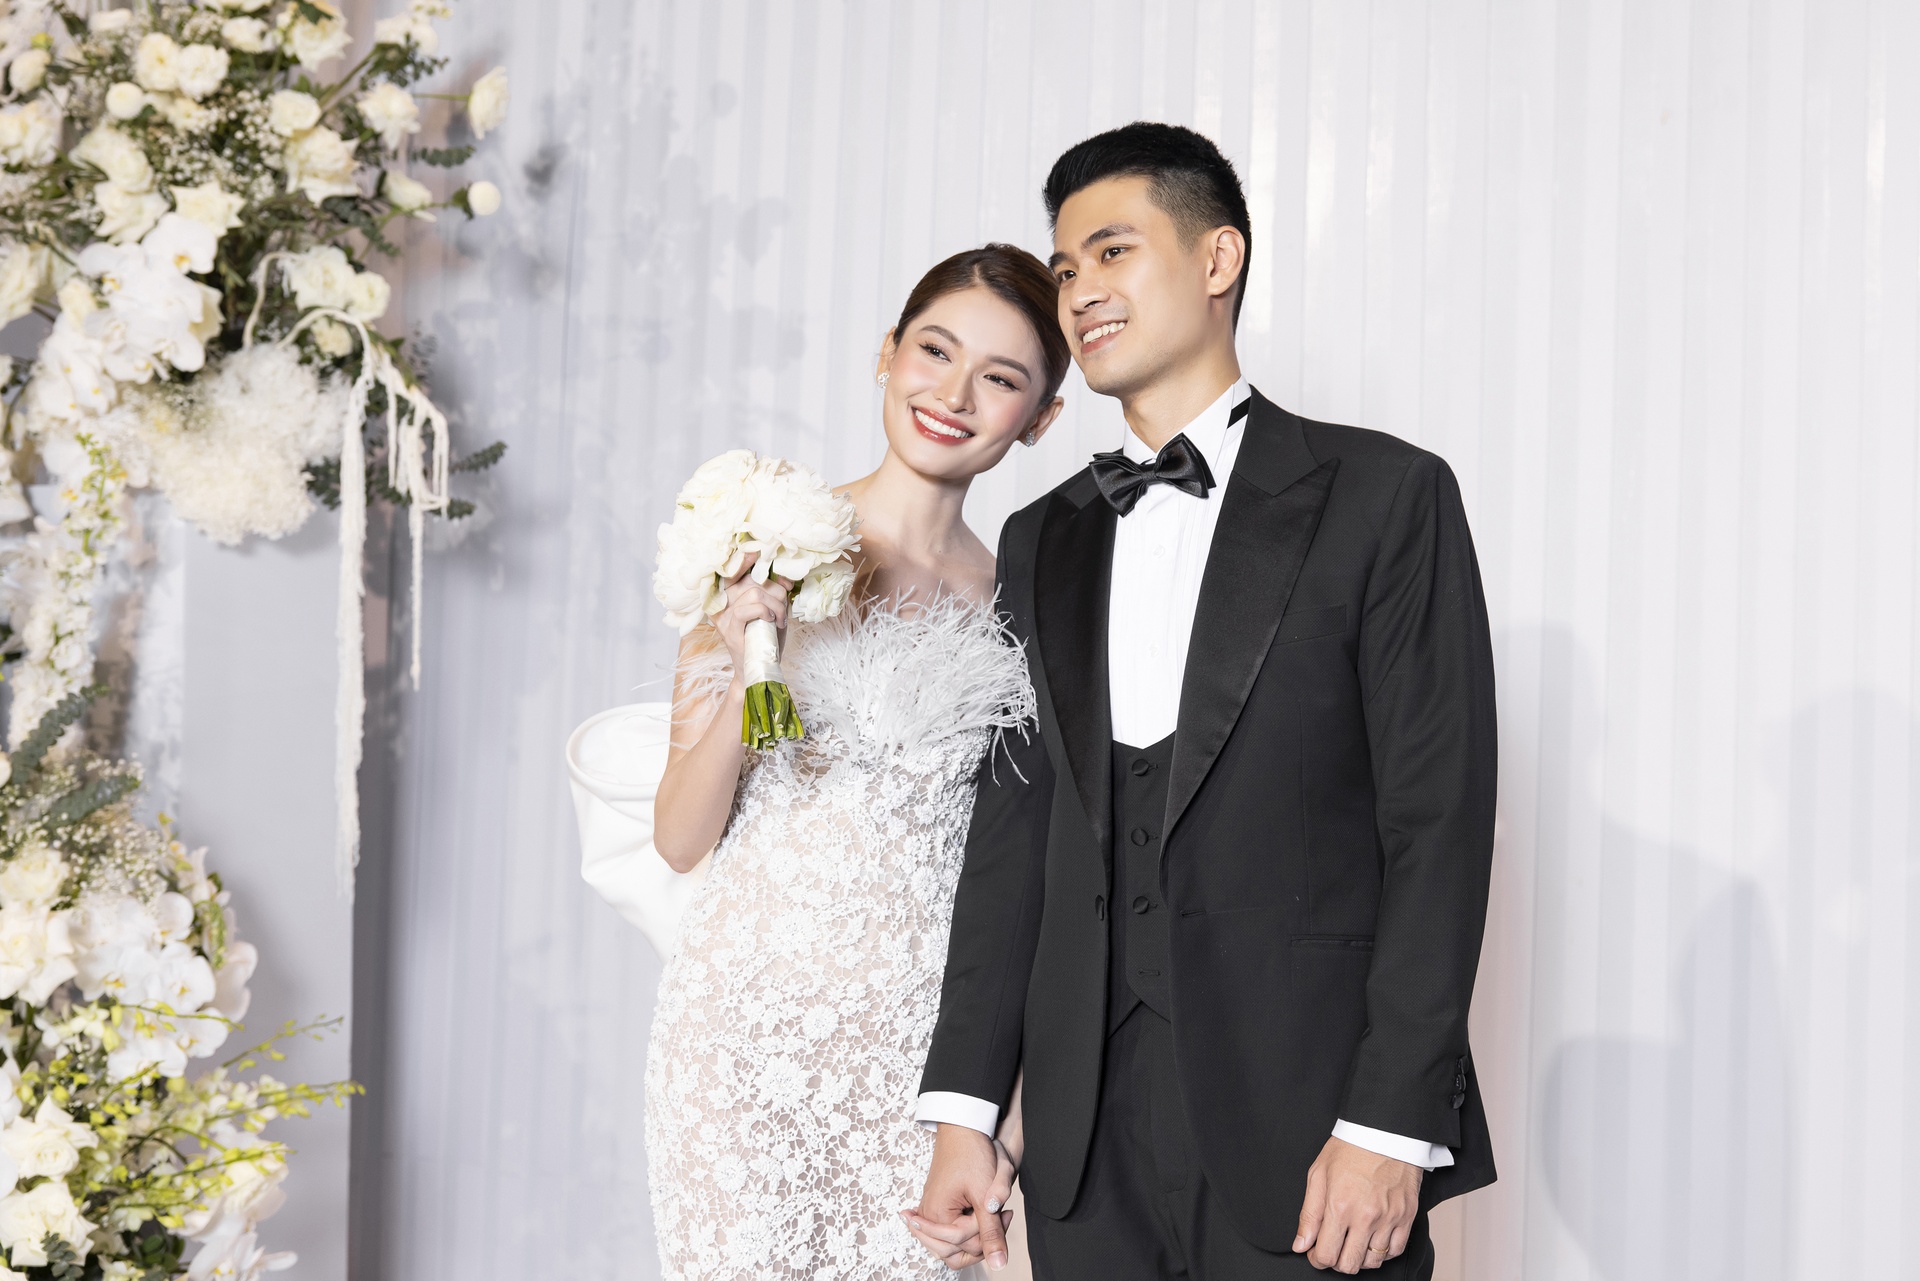 Toàn cảnh đám cưới cổ tích của Á hậu Thùy Dung và chồng thạc sĩ: Không gian cưới tràn ngập hoa tươi, thực đơn 'cao sang mỹ vị' - Ảnh 7